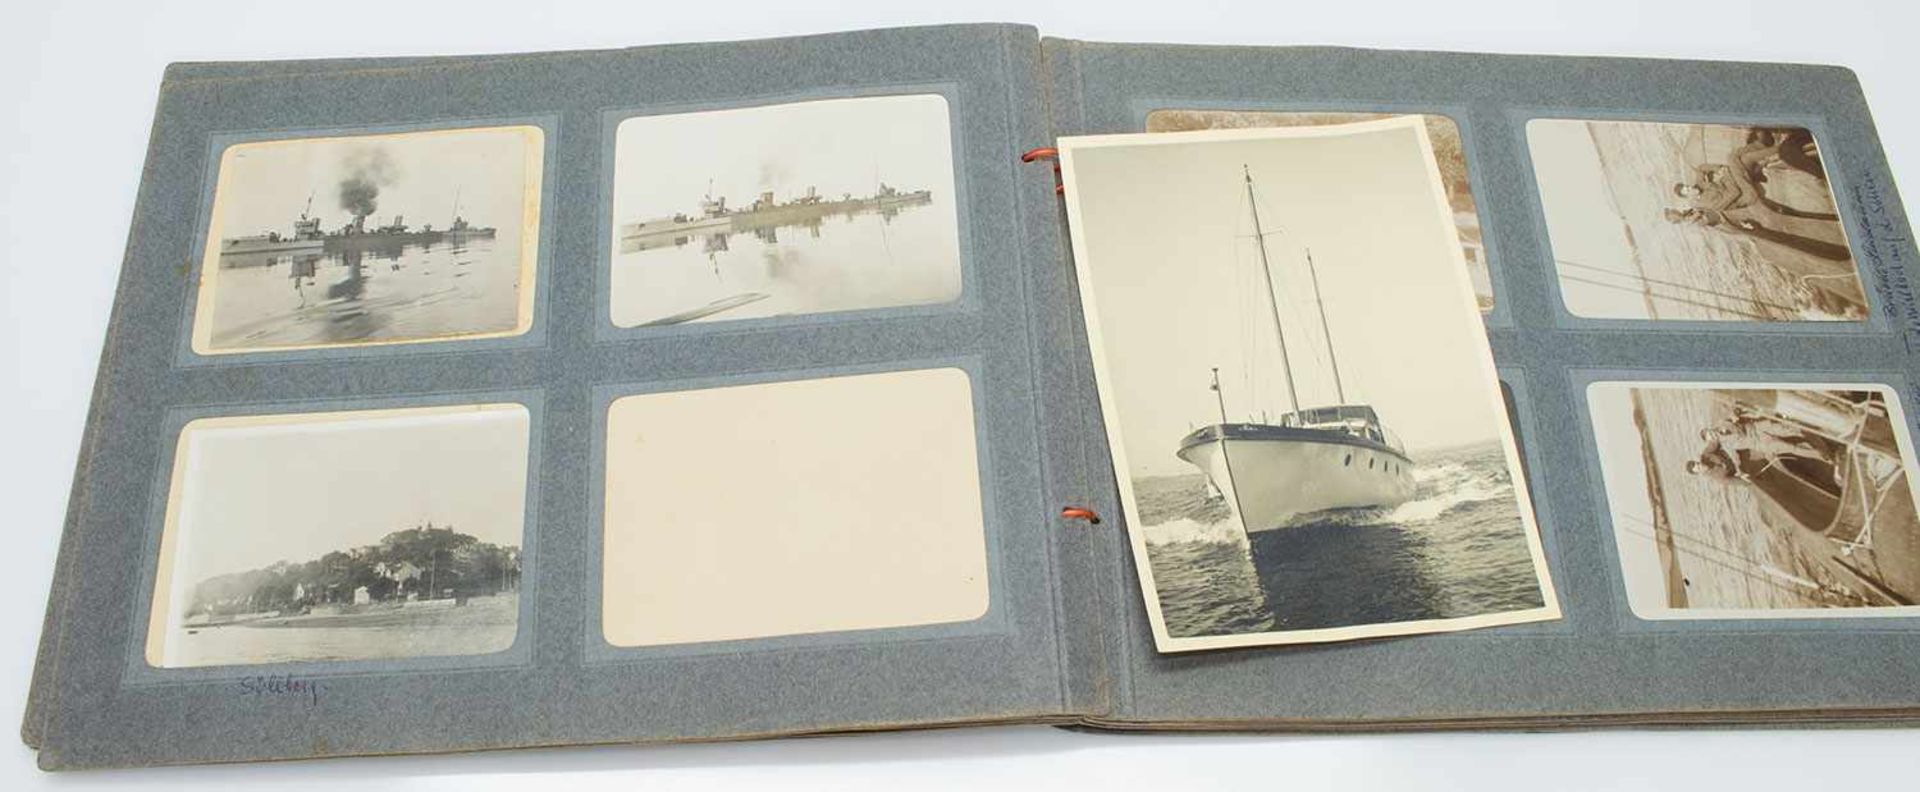 FotoalbumNorddeutschland um 1910, zahlreiche Fotos von Schleswig u. Bootstouren auf der Schlei, - Image 2 of 2